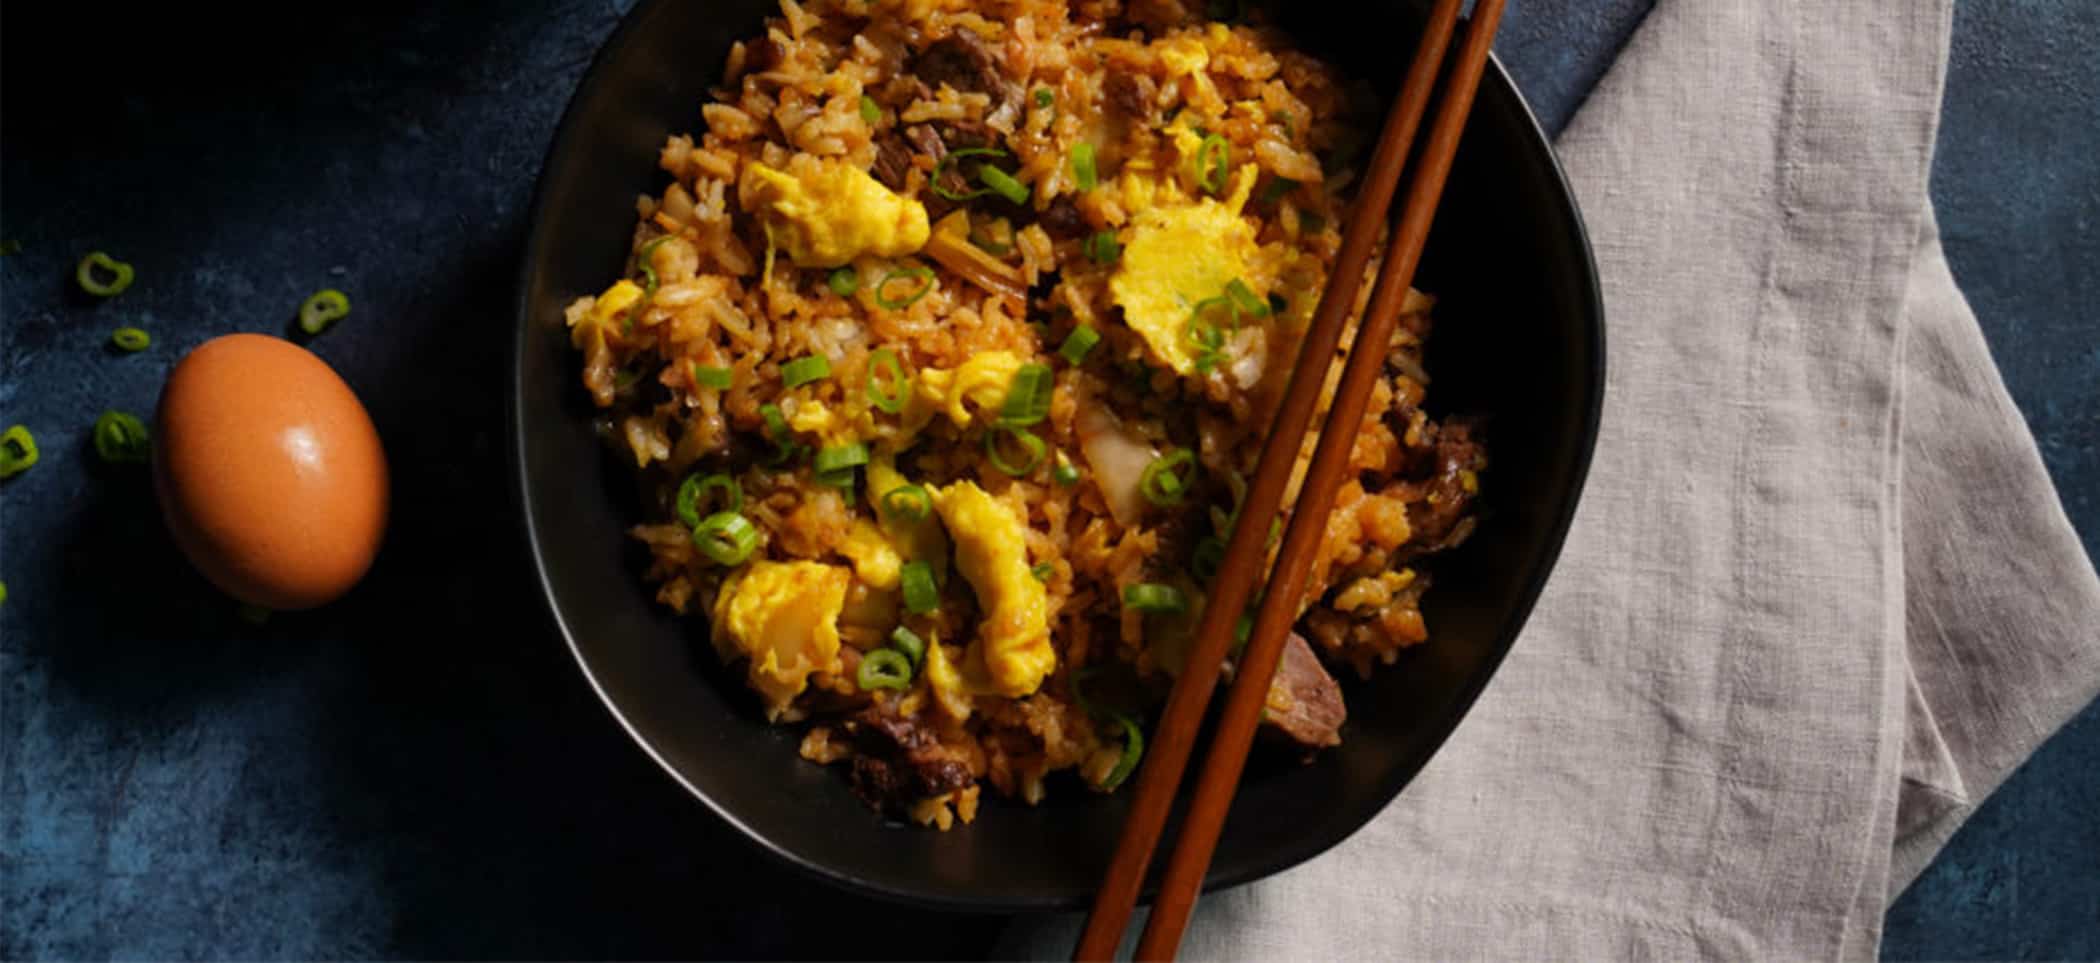 Beef Bulgogi and Kimchi and Egg Fried Rice